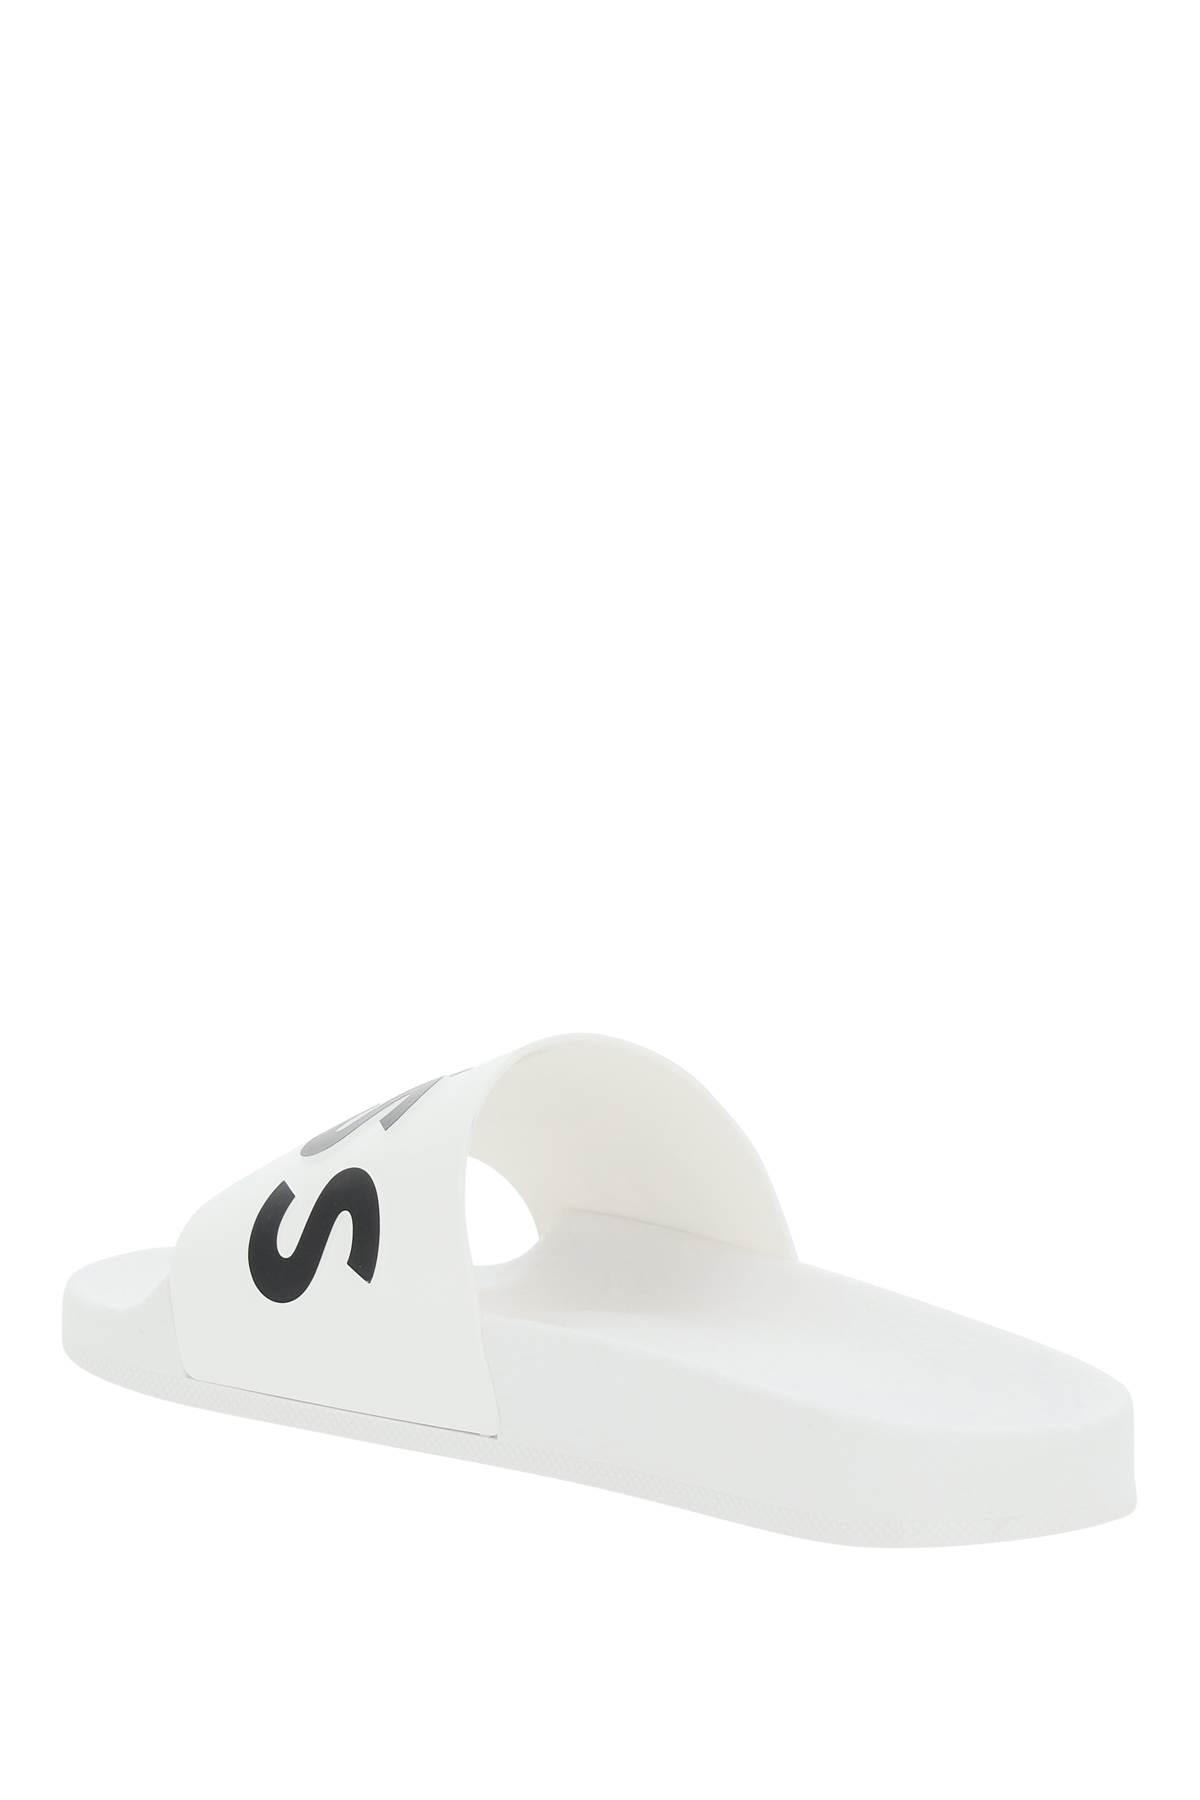 BOSS by HUGO BOSS Slippers With Logo in White for Men | Lyst